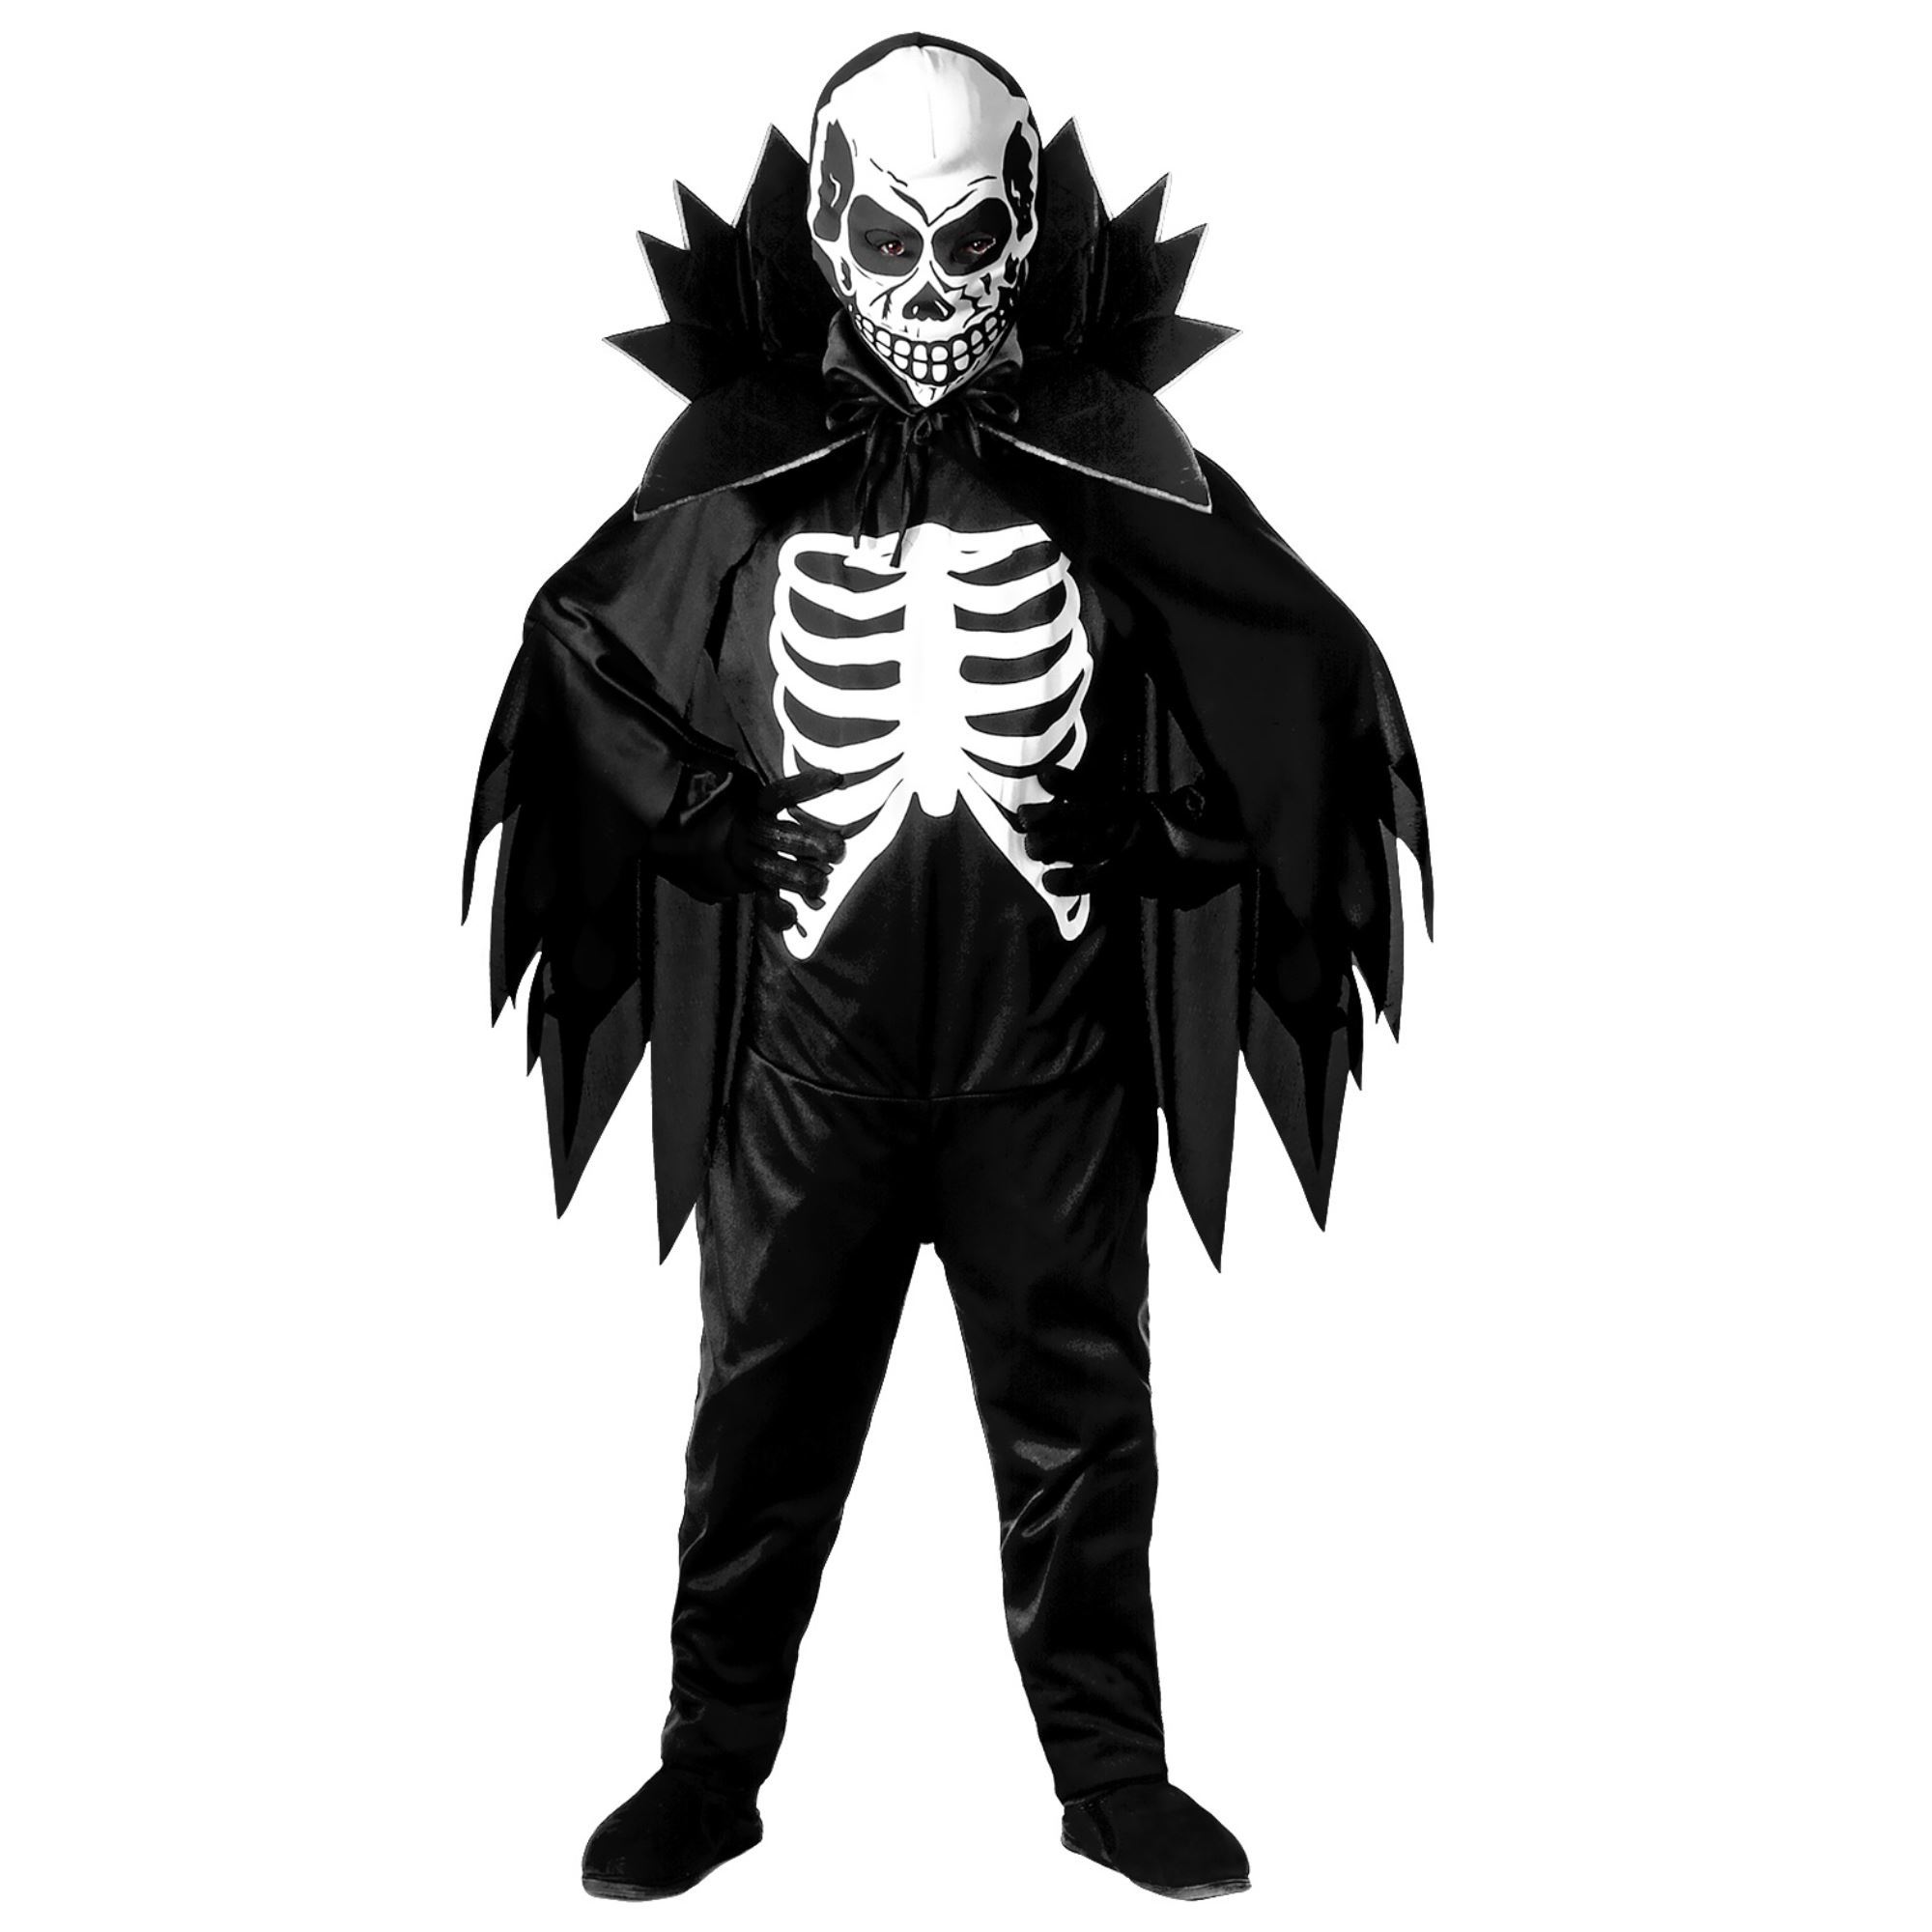 afschrikkend skelet kostuum zwart met geraamte kind